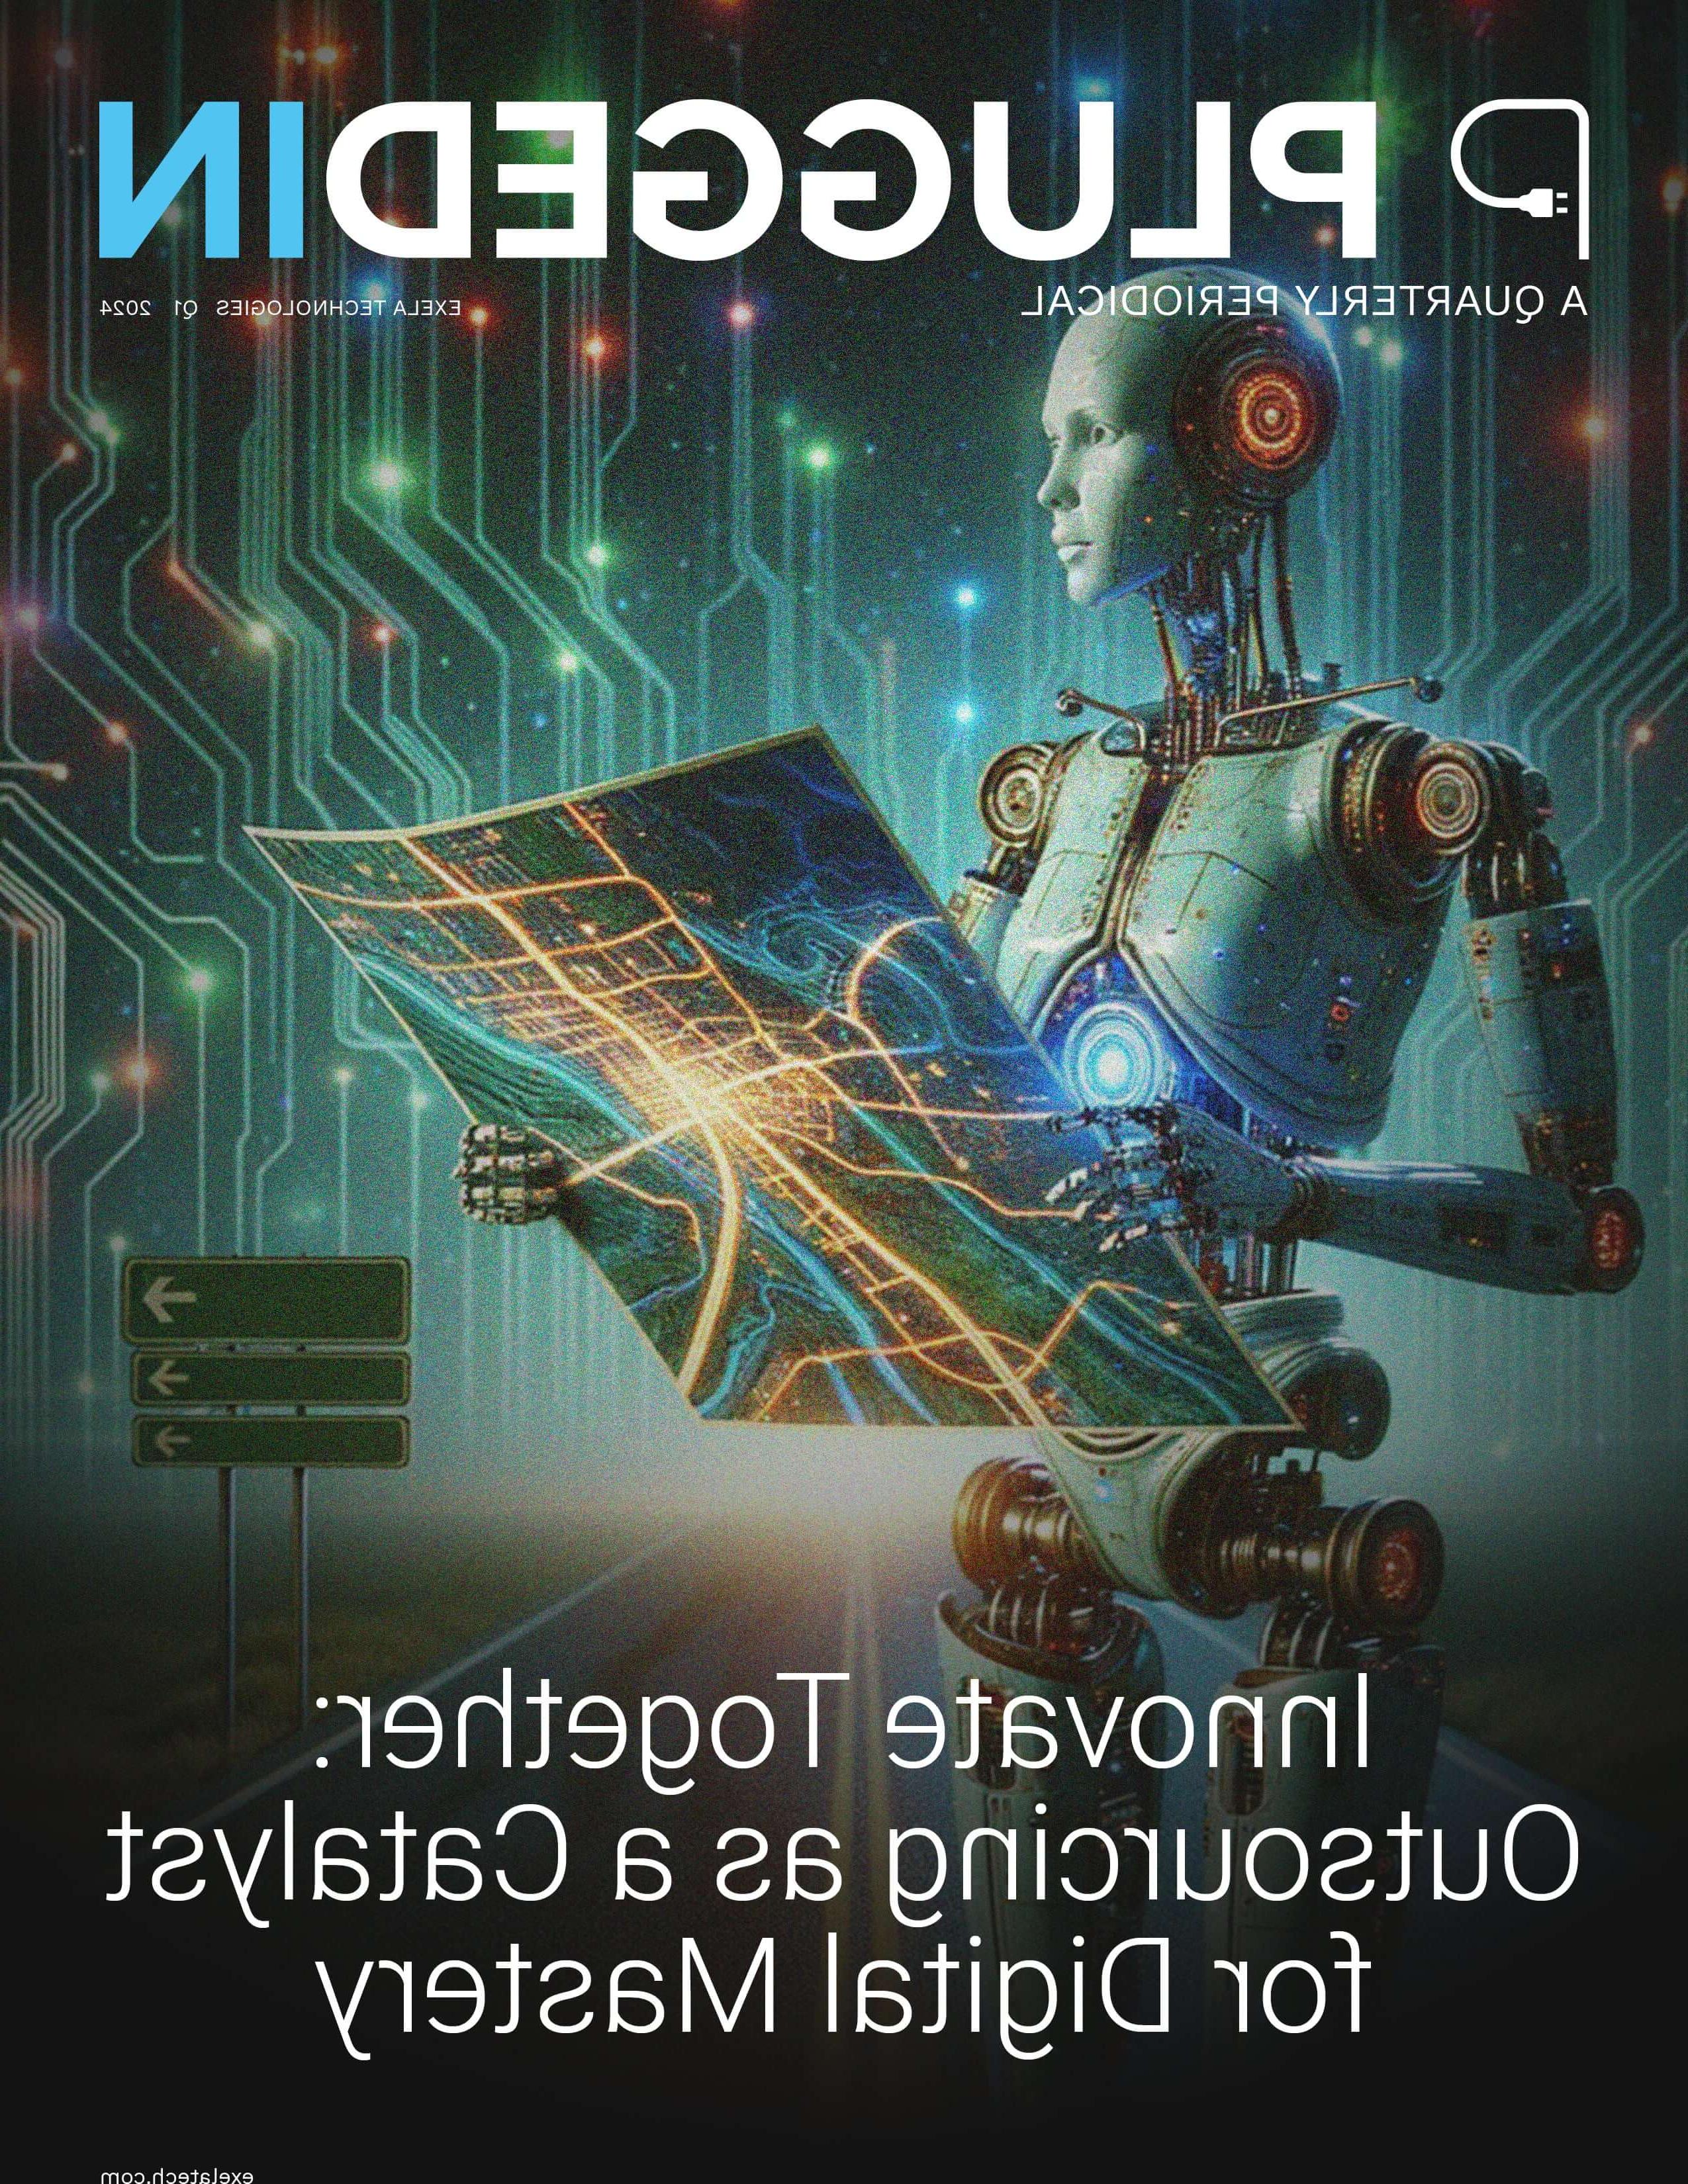 图为云顶集团400811公司于2024年出版的季刊《plug IN》的封面. 它的特点是一个手持发光数字蓝图的机器人形象, 电路板背景过渡到外太空. 封面标题是“共同创新:外包作为数字化掌控的催化剂”,和exelatech网站.Com”被列在底部.